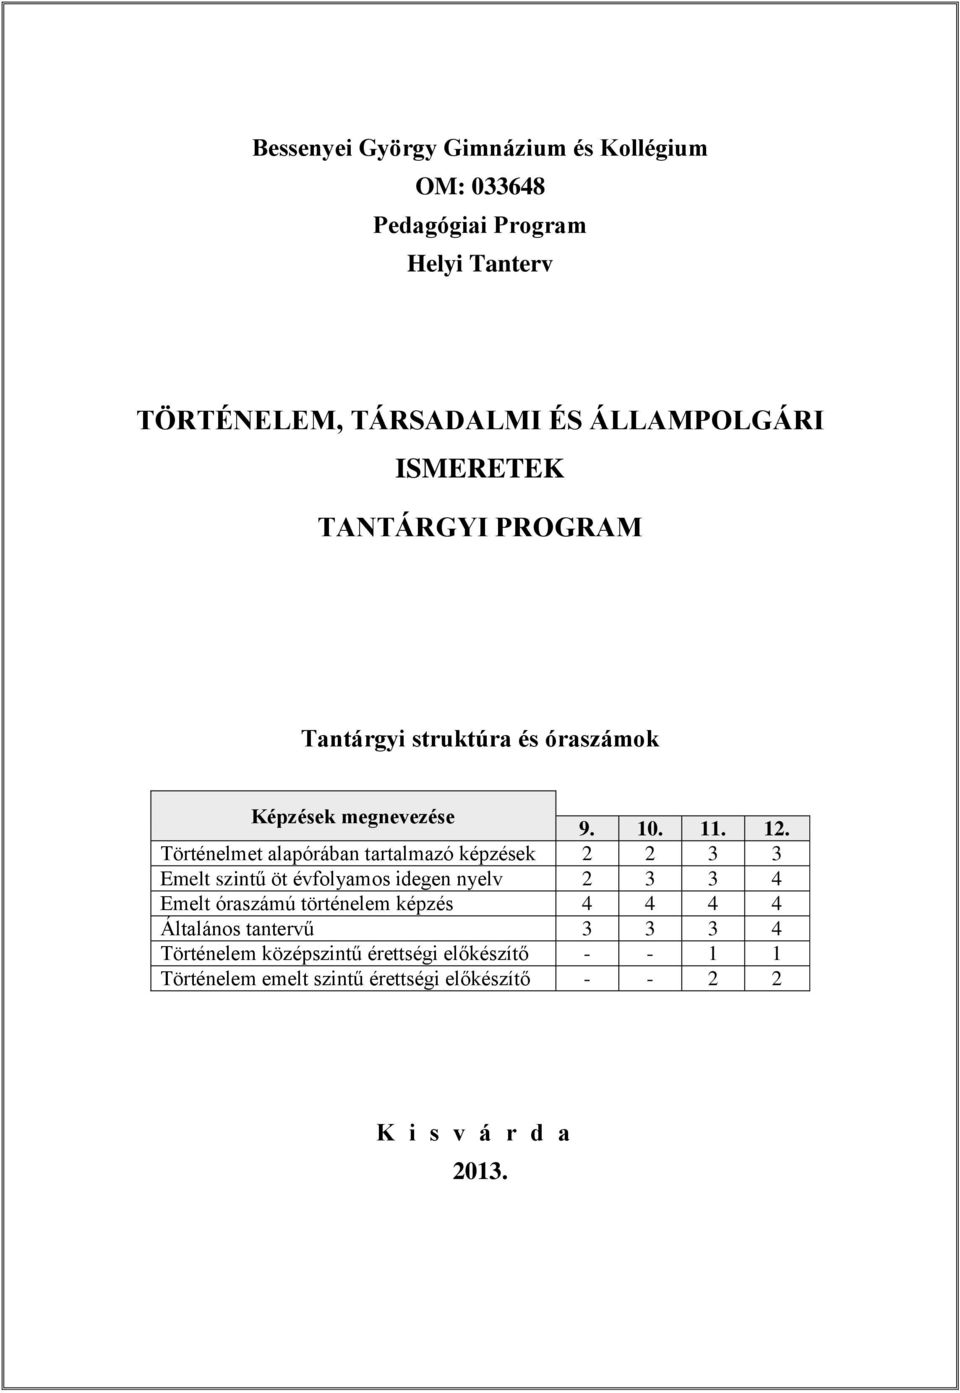 TÖRTÉNELEM, TÁRSADALMI ÉS ÁLLAMPOLGÁRI ISMERETEK TANTÁRGYI PROGRAM - PDF  Free Download